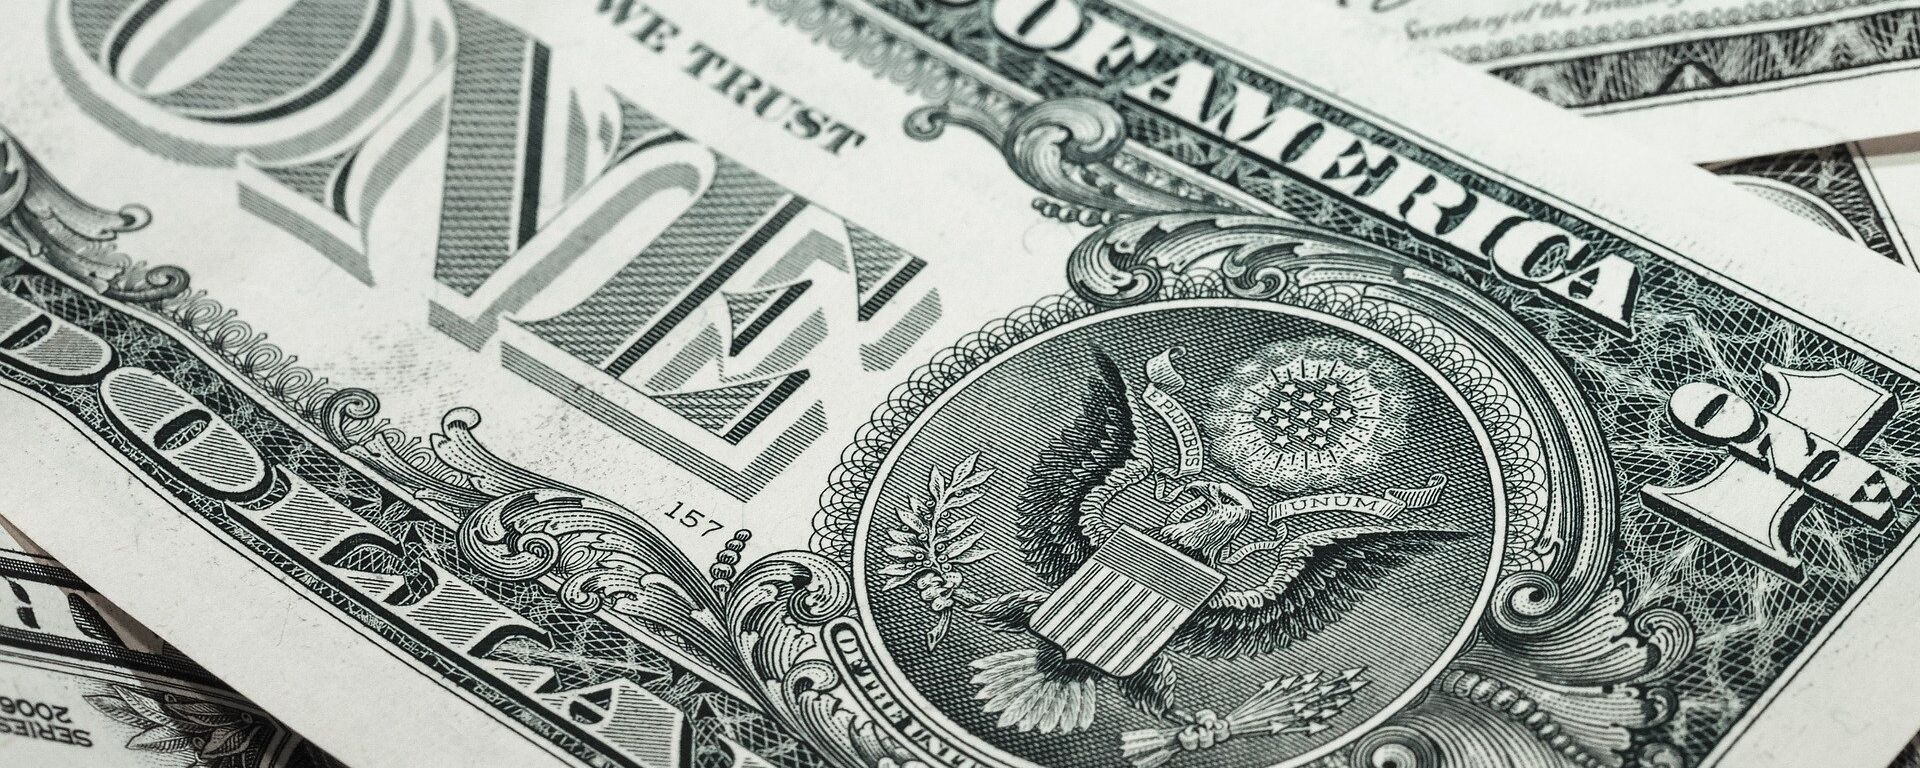 Dólar, moneda de EEUU - Sputnik Mundo, 1920, 19.04.2021